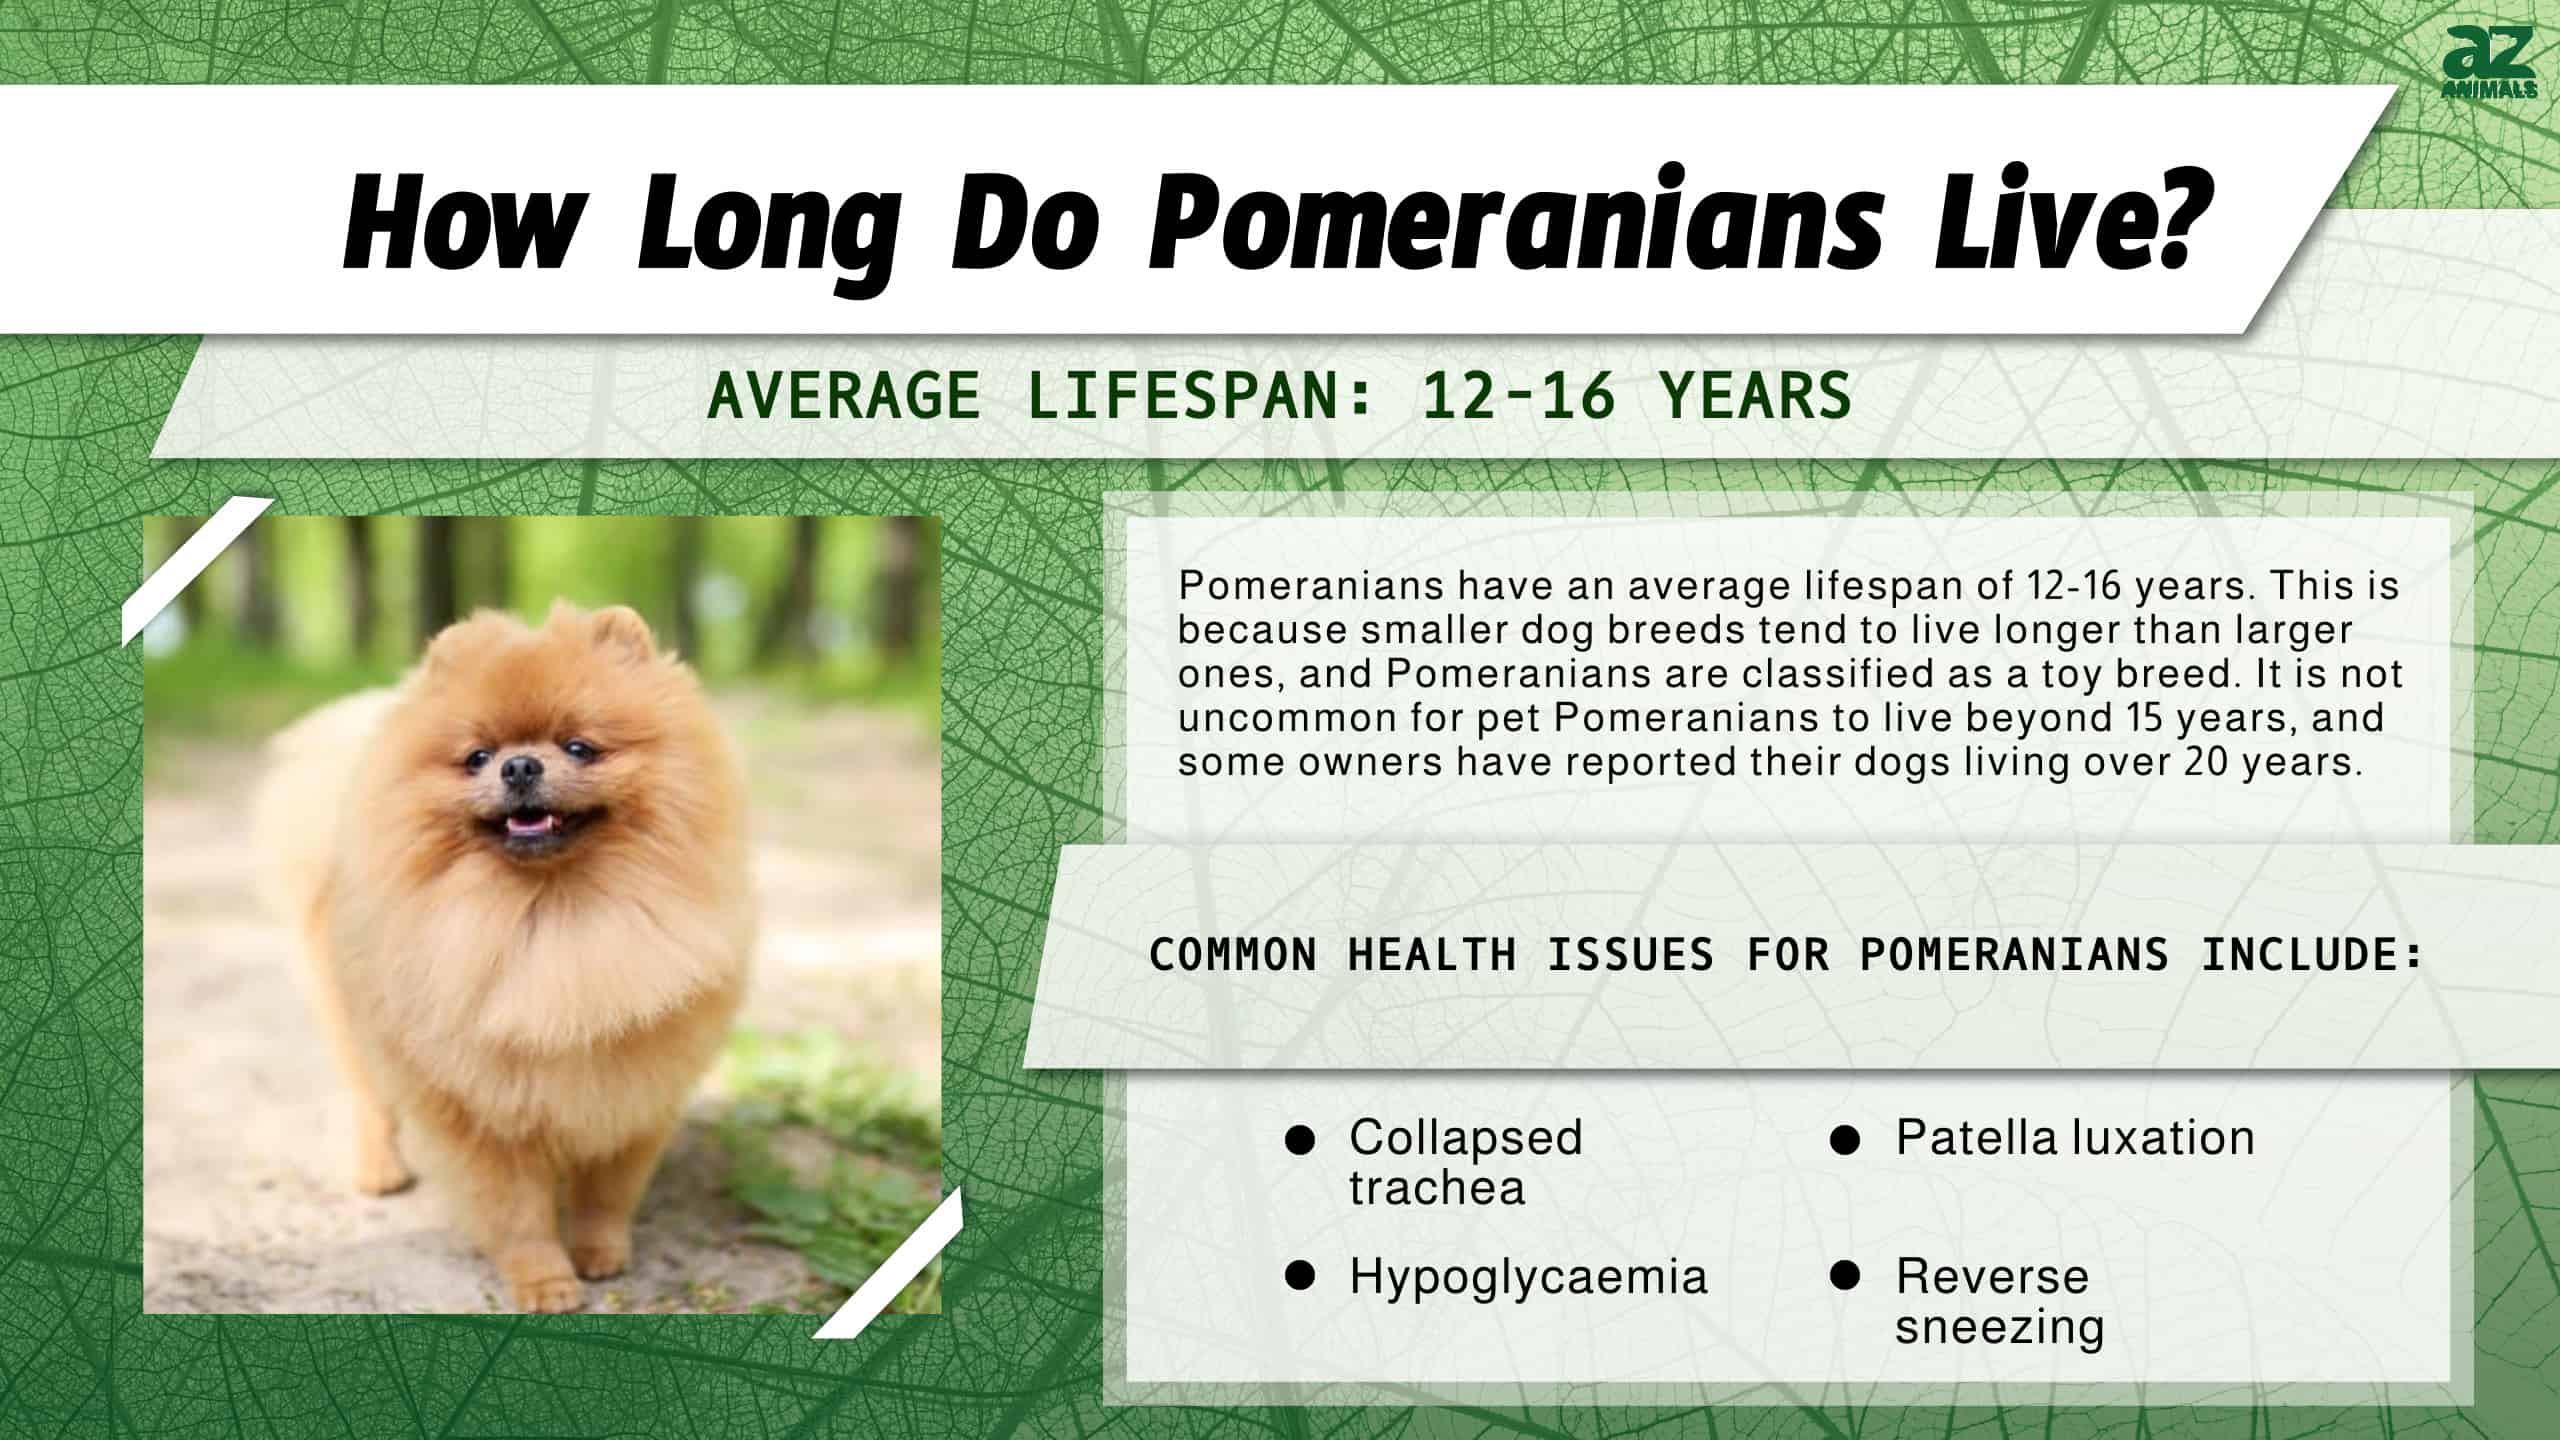 How Long Do Pomeranians Live? infographic